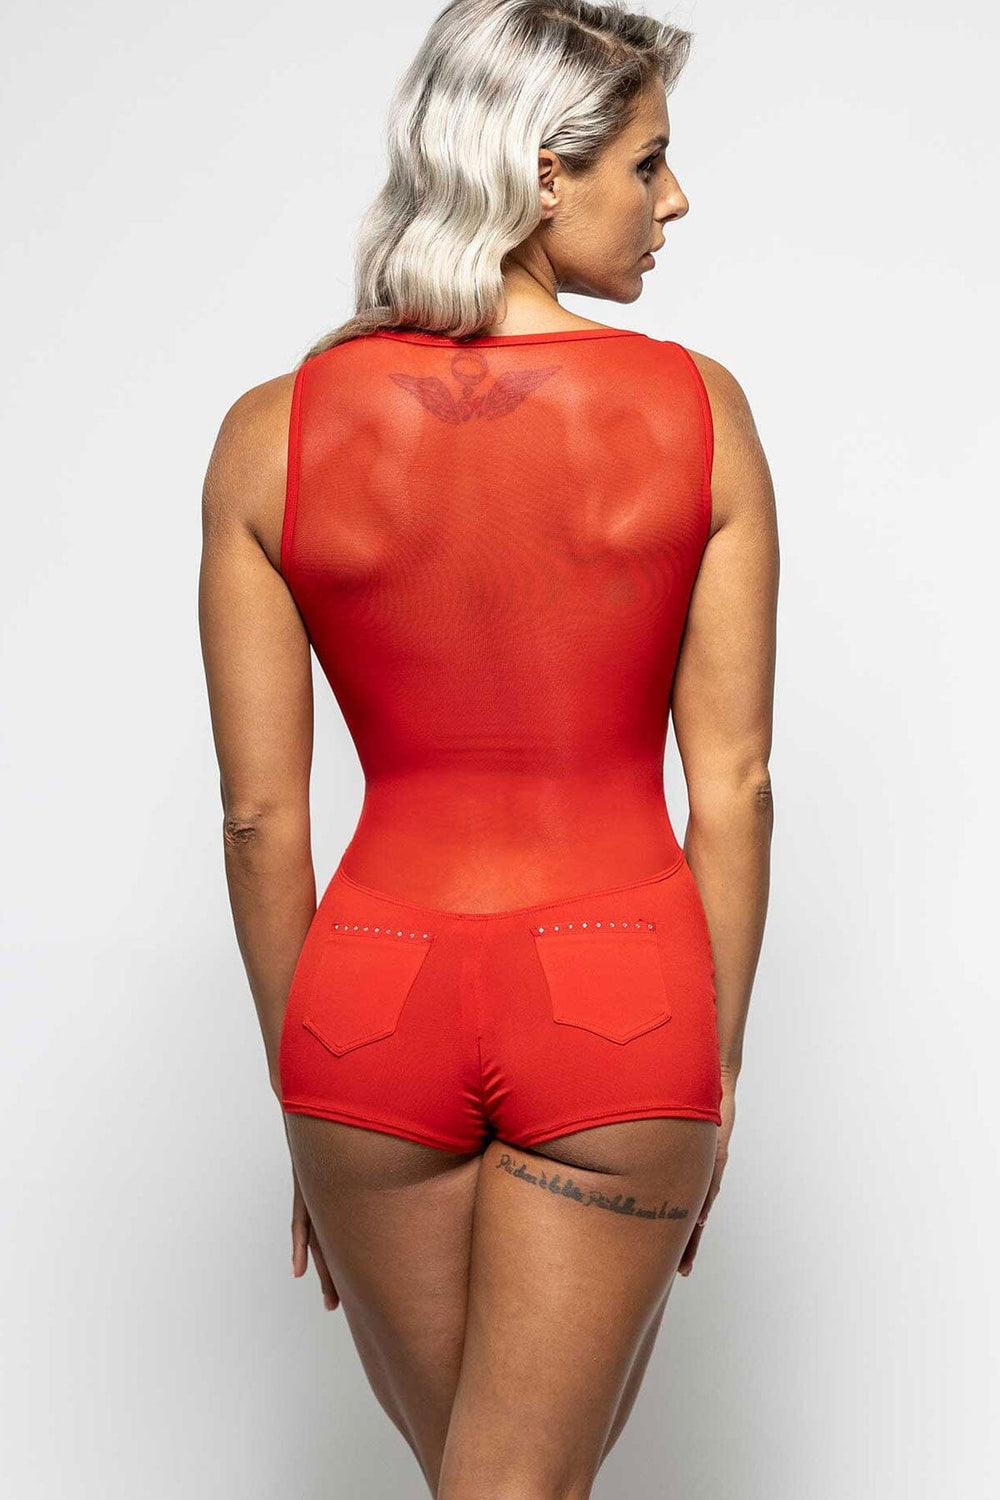 Dilys Black Lycra Playsuit-Fetish Bodysuits-Les P'tites Folies-SEXYSHOES.COM